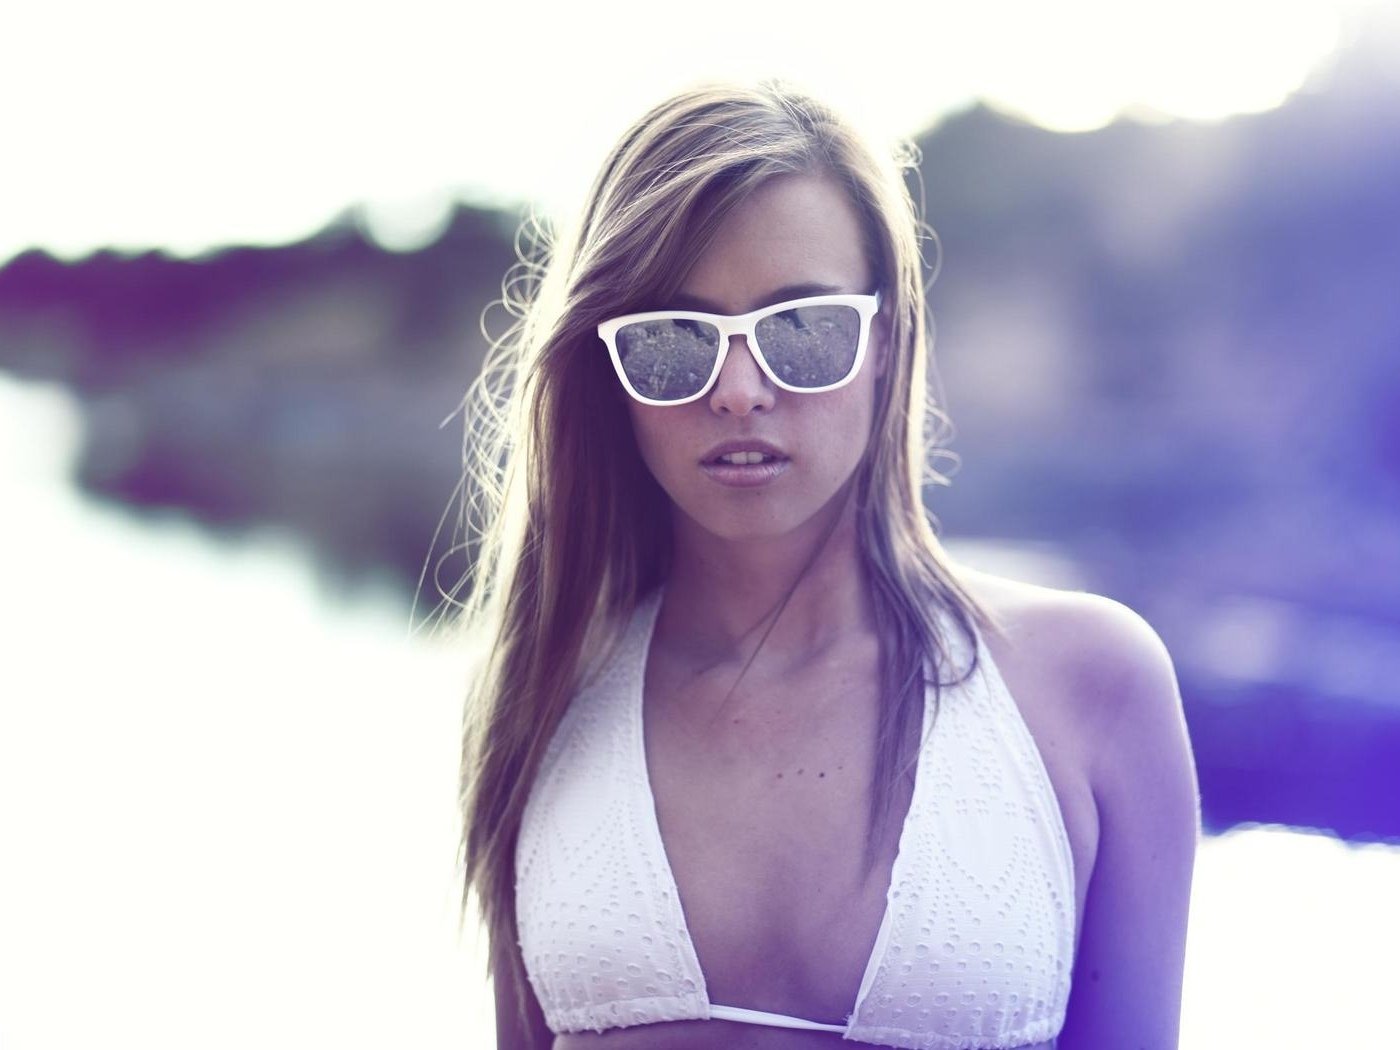 Фото голой девушки в солнечных очках 